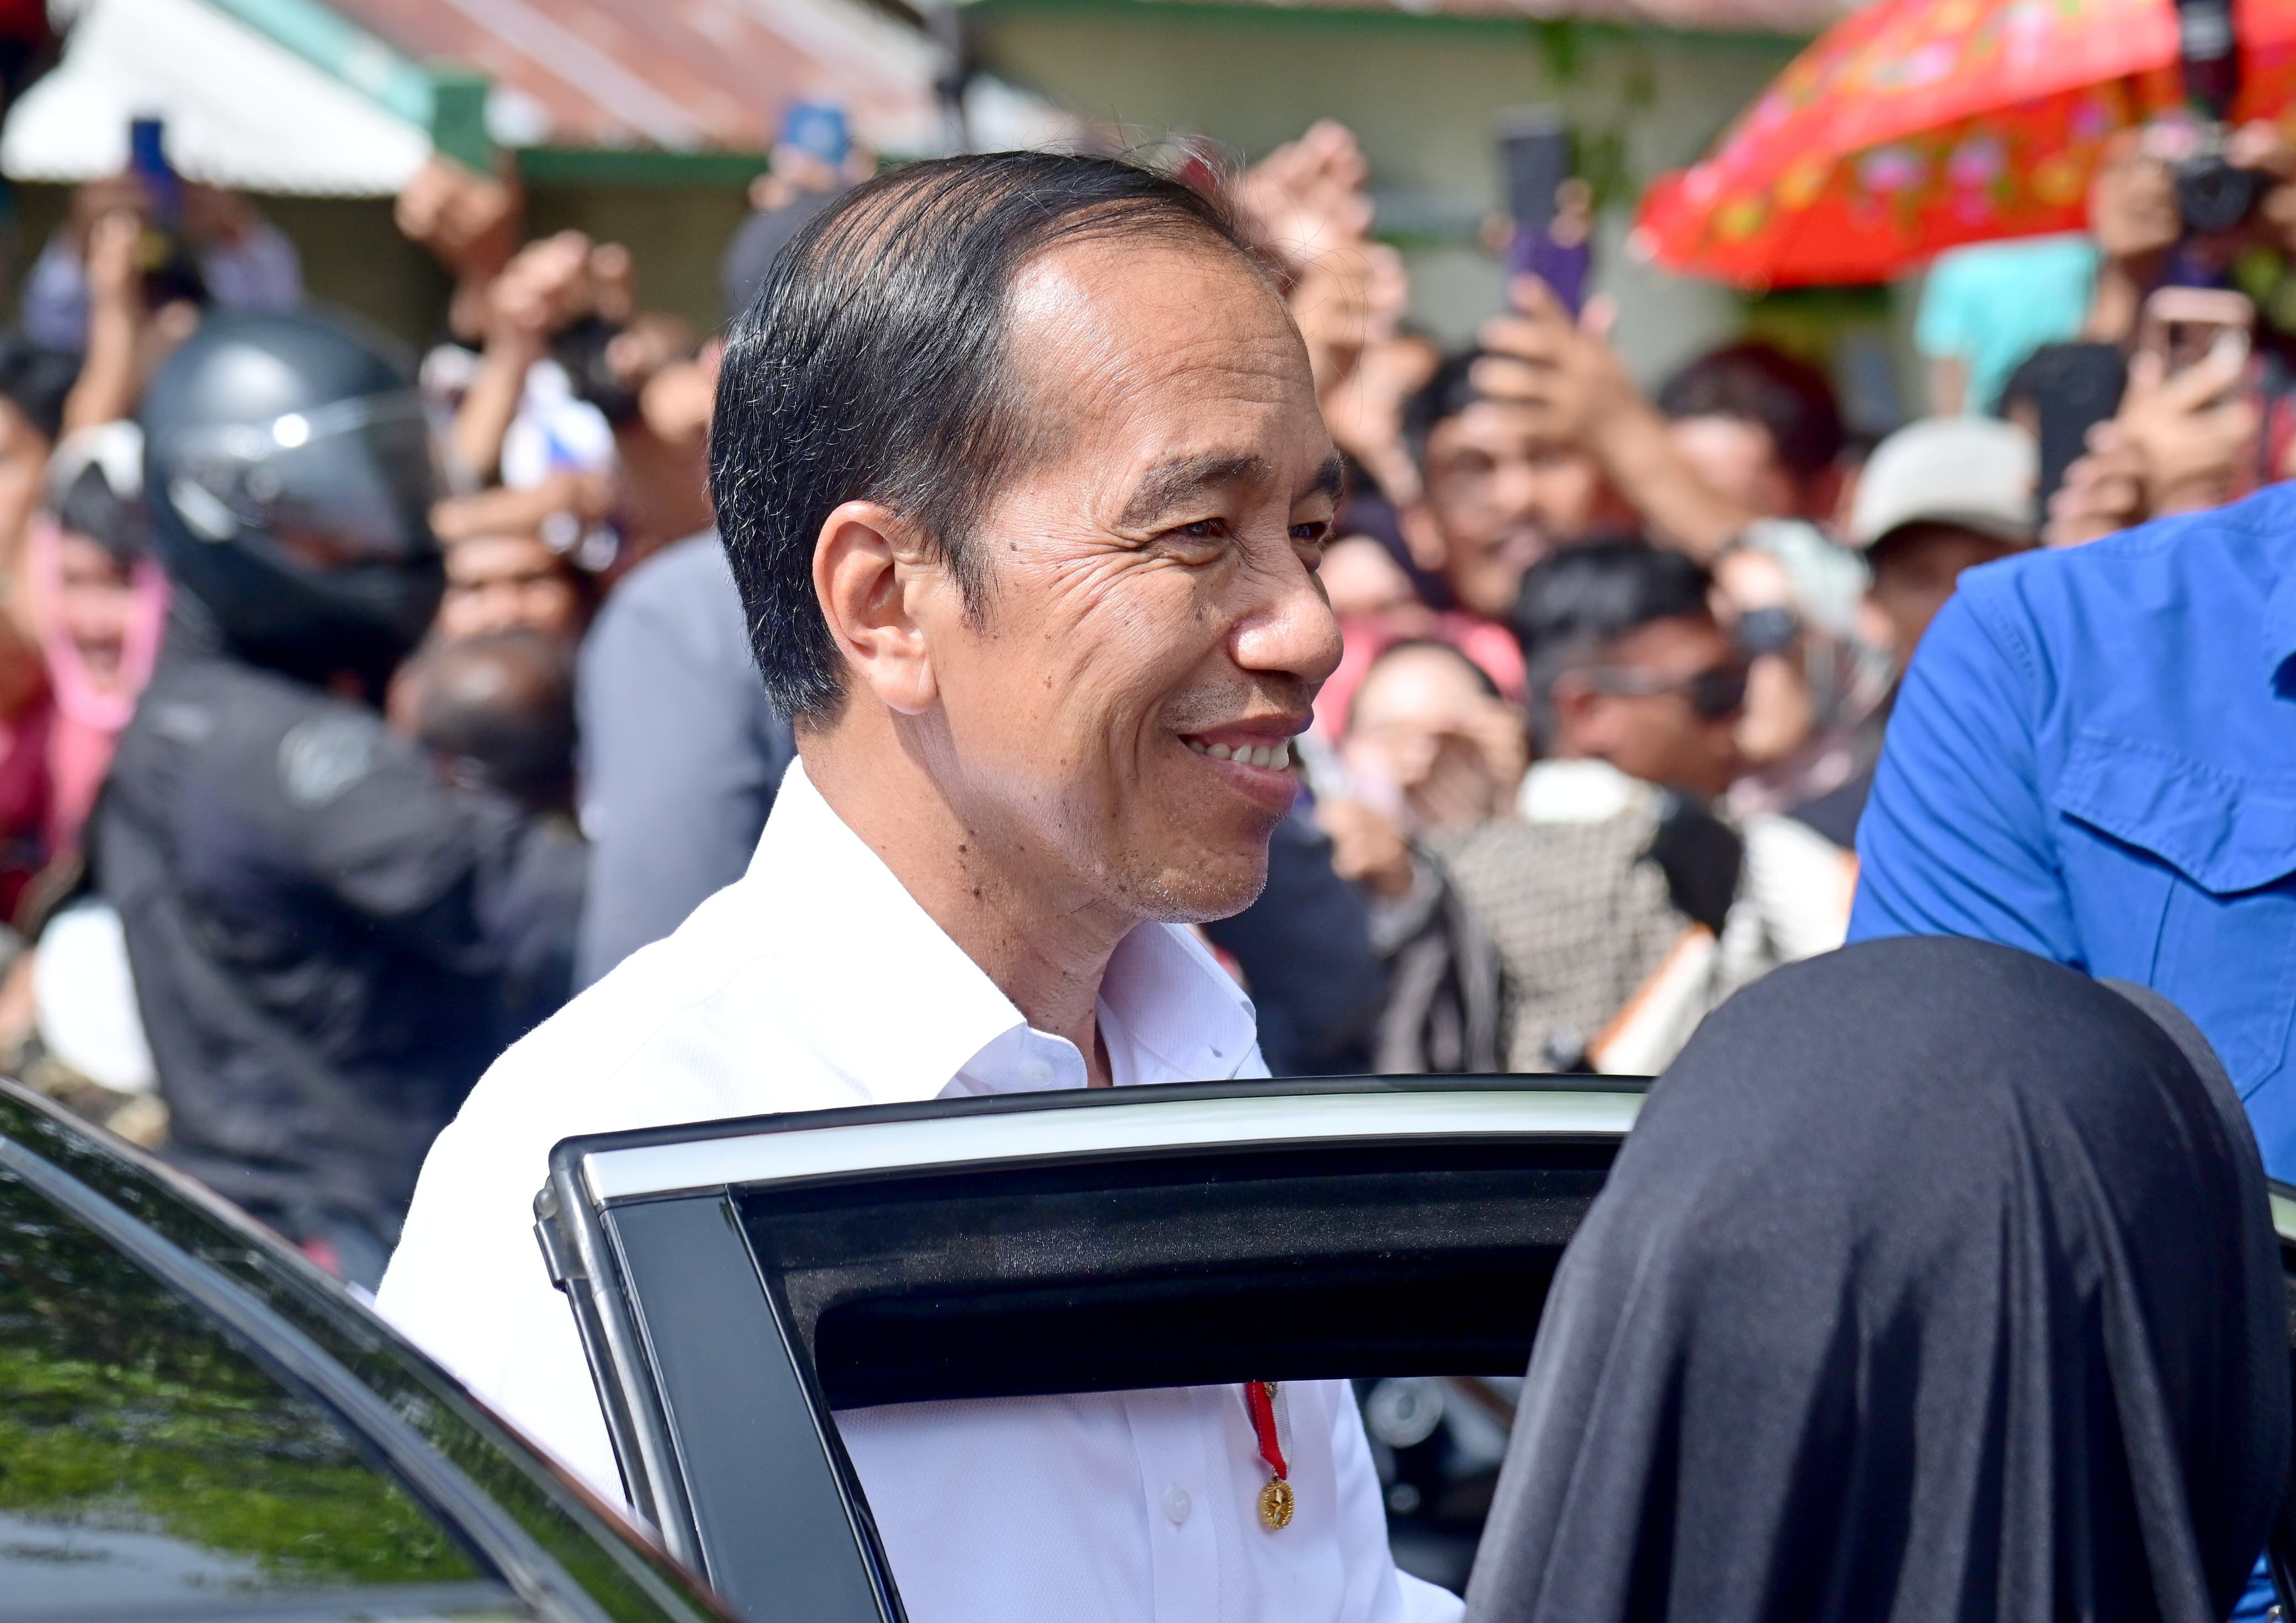 Timnas Kalahkan Vietnam, Jokowi Singgung Perbaikan Rangking Sepak Bola Indonesia di FIFA